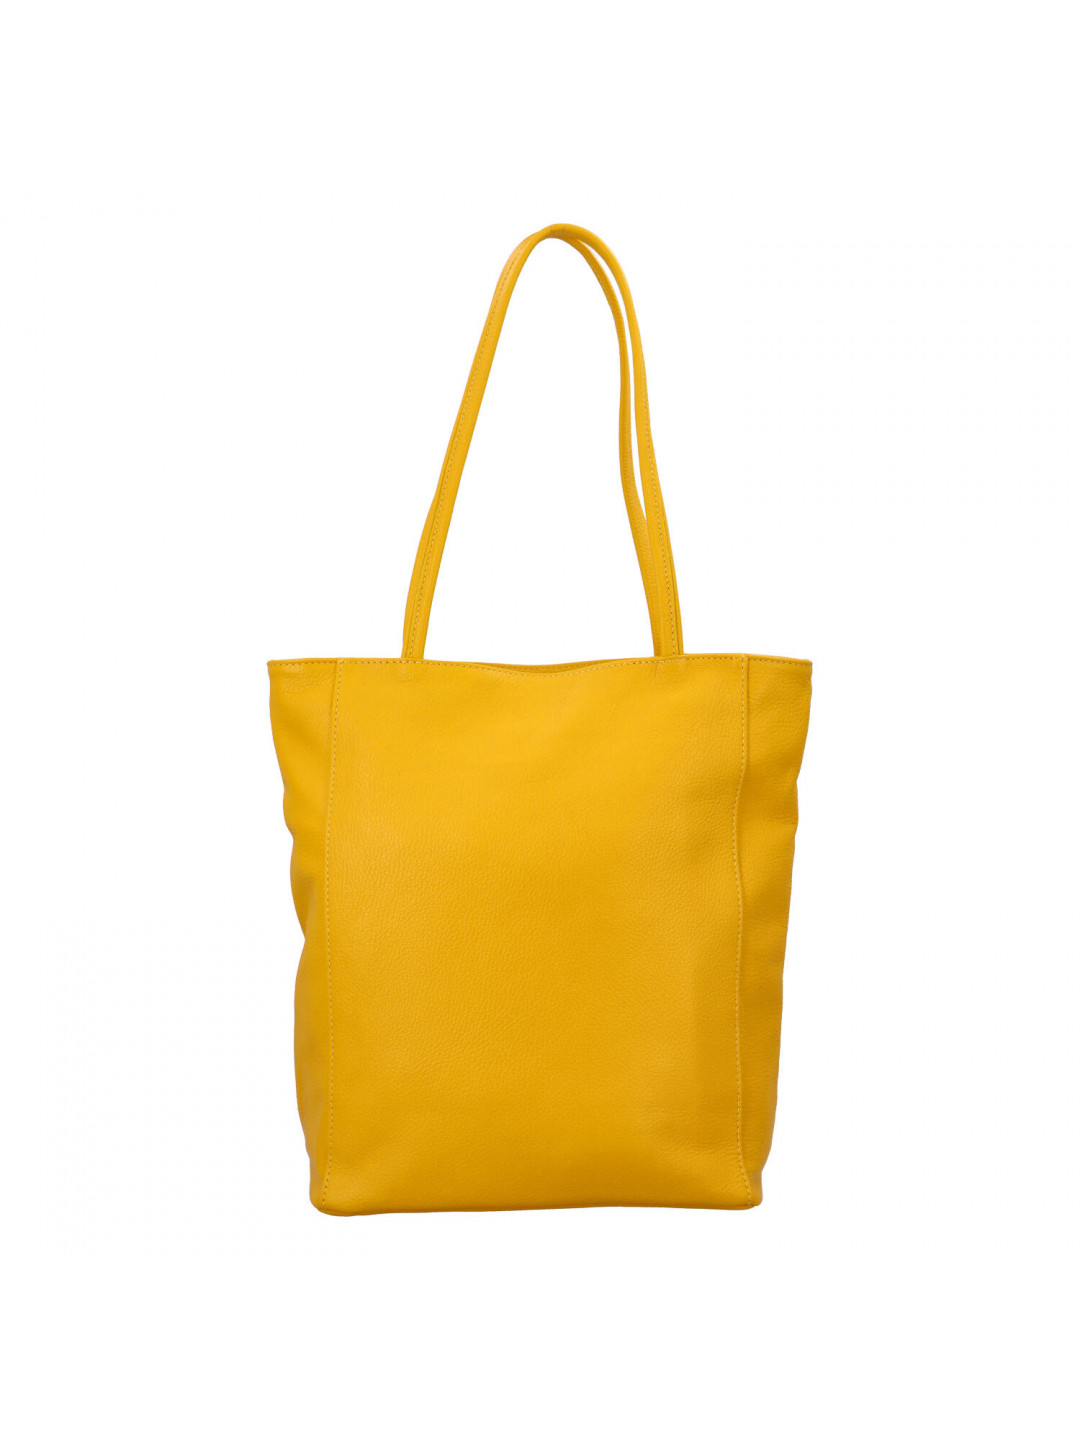 Luxusní dámská kožená kabelka Jane žlutá